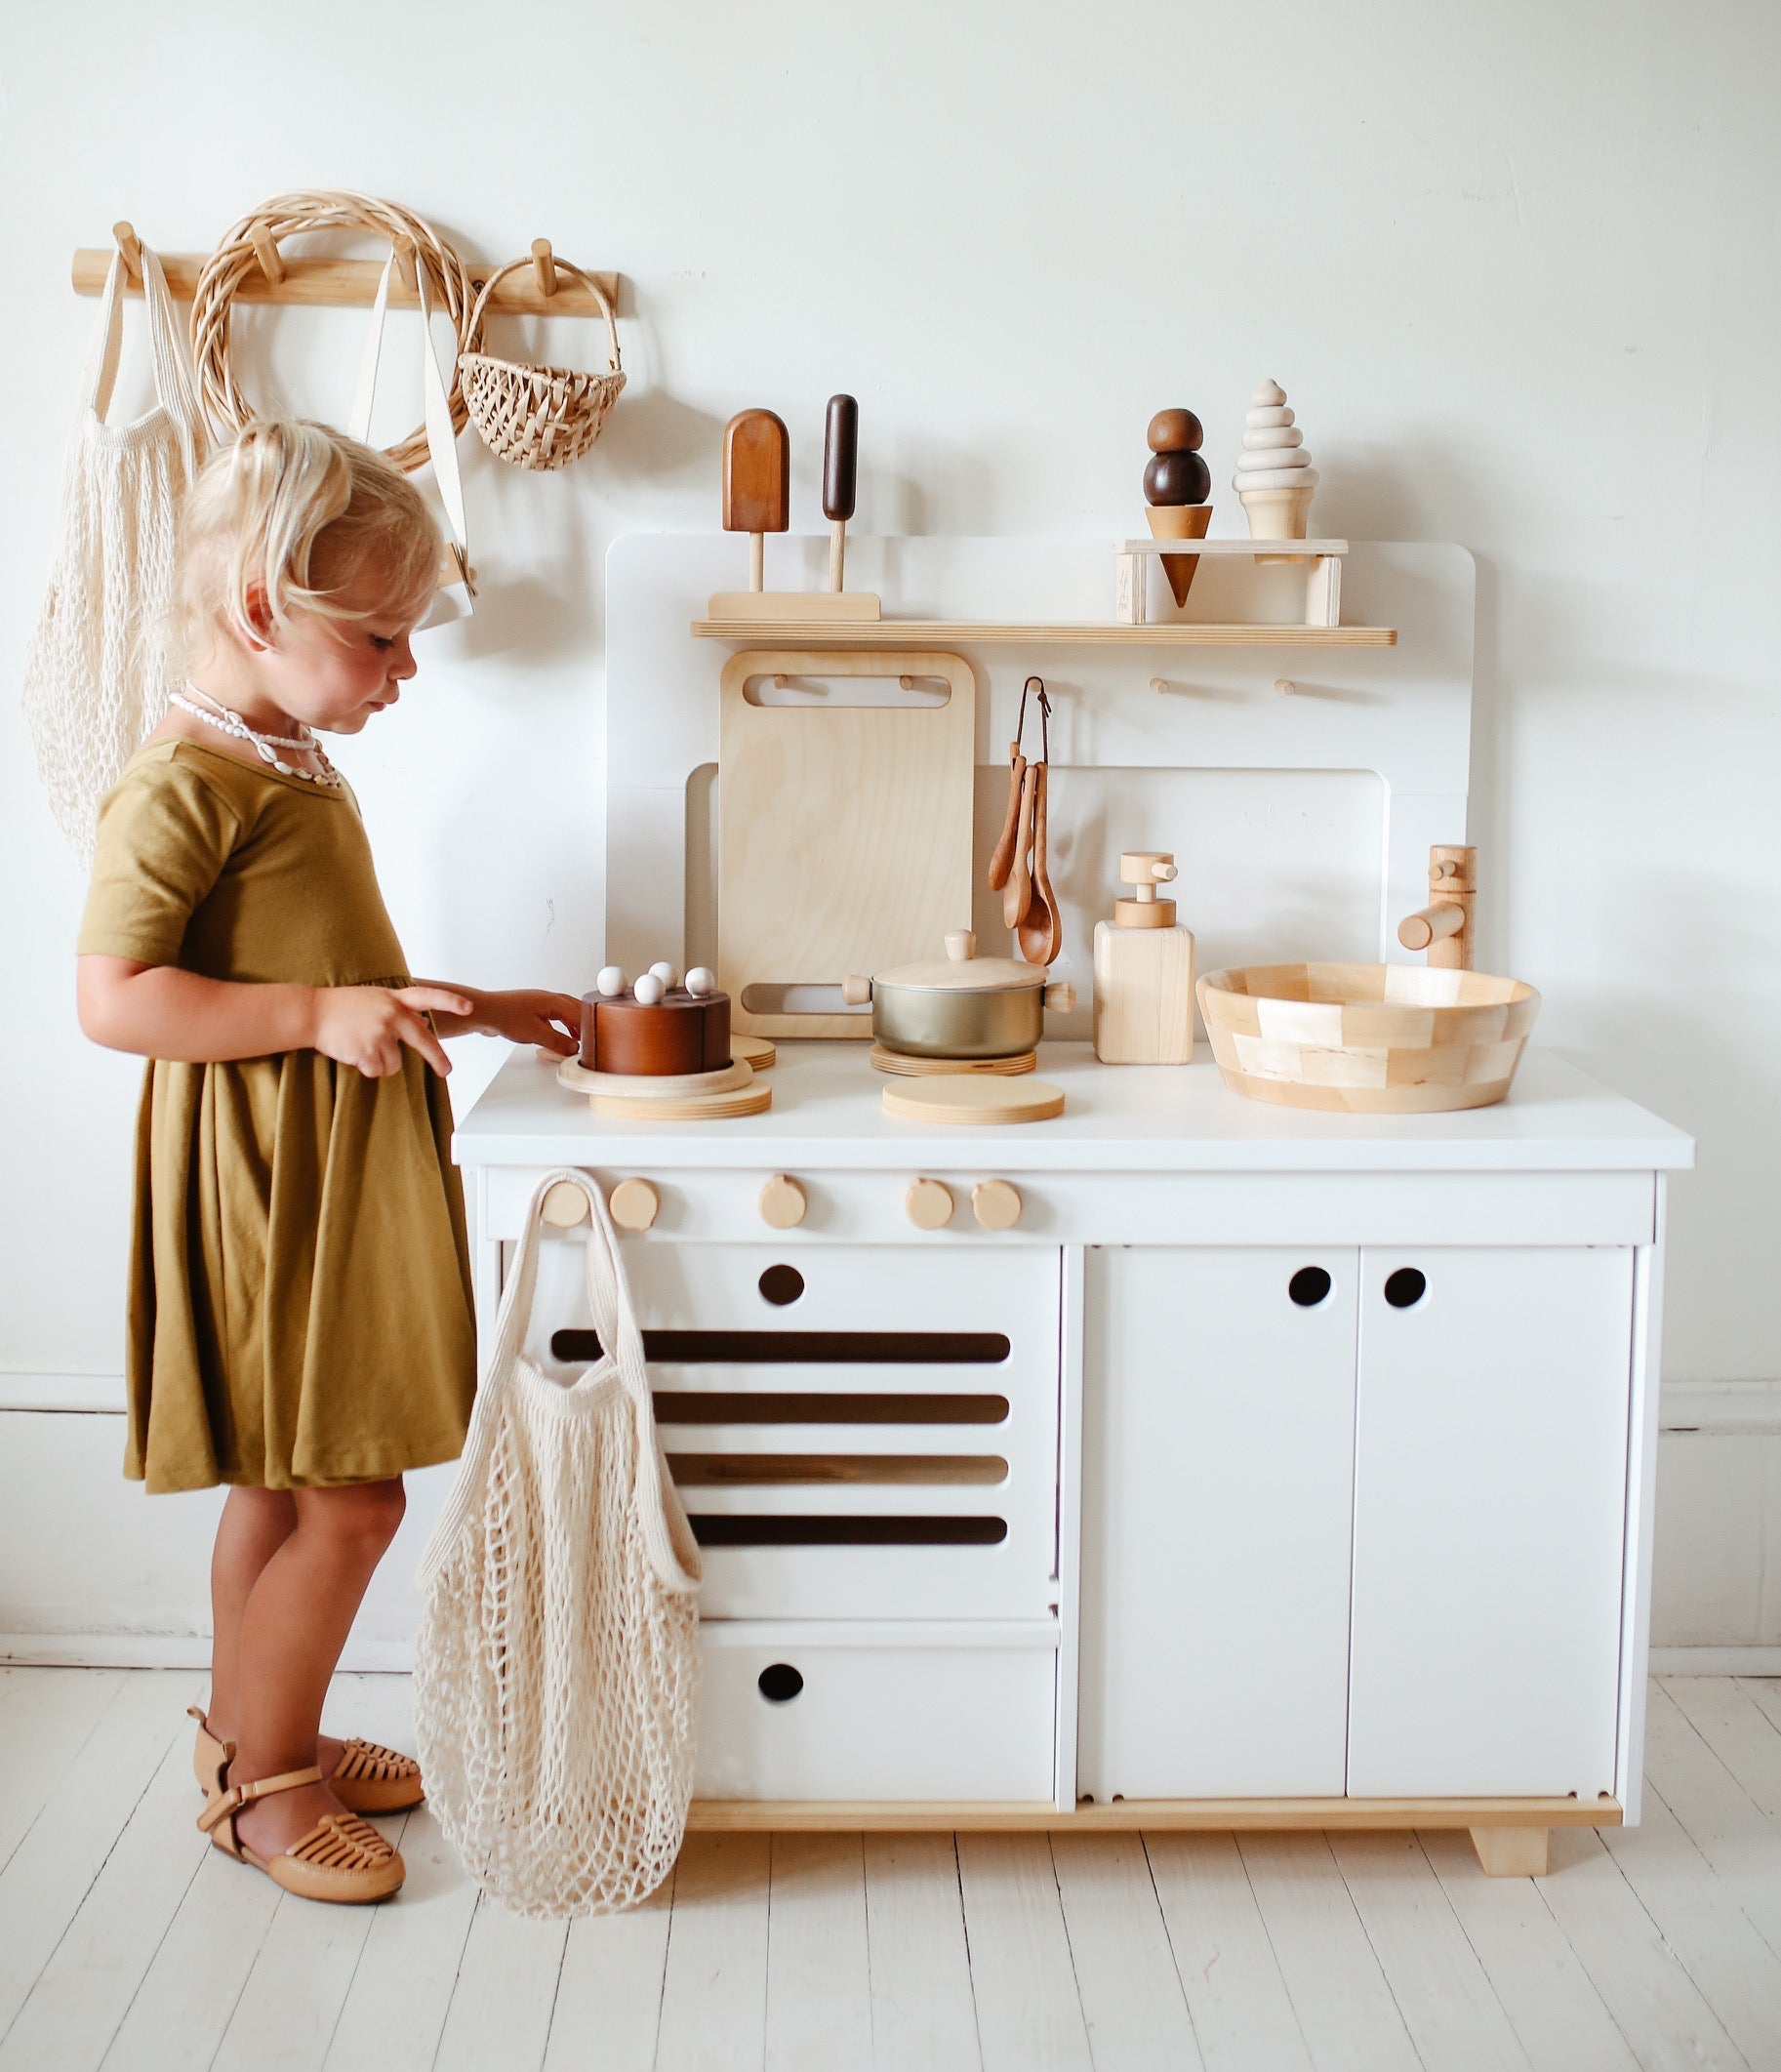 Dolce cucina giocattolo in legno per bambini - ora cucina come i